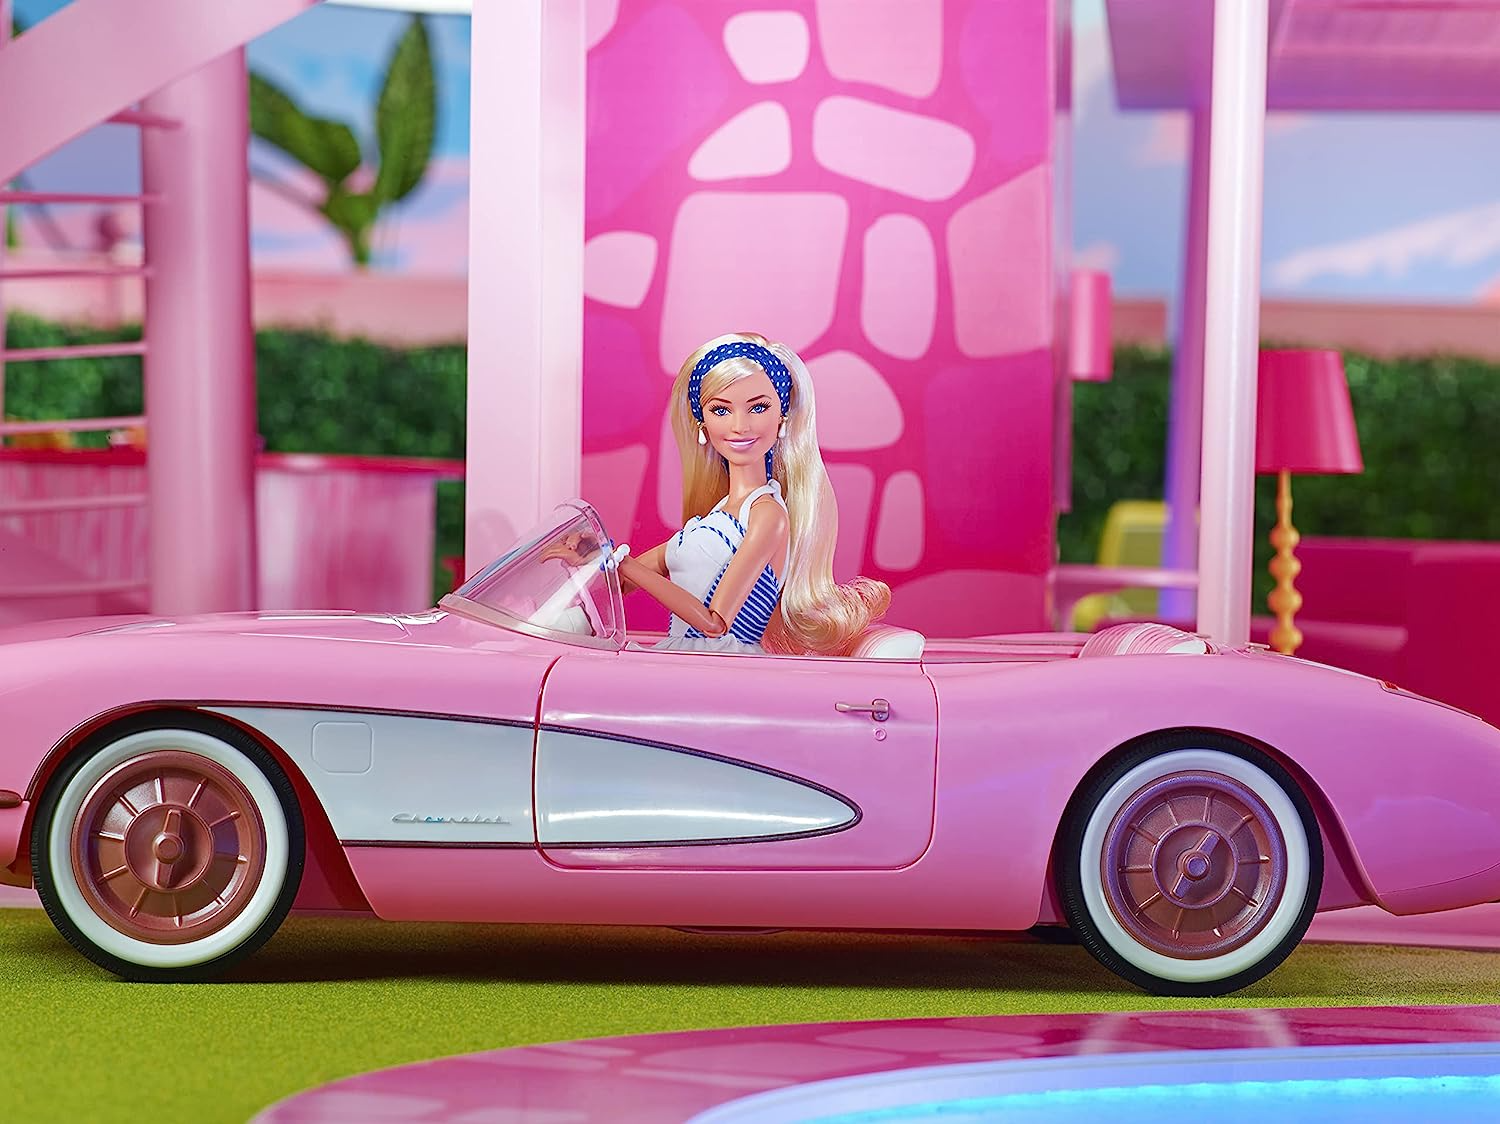 Guarda Roupa da Barbie Original, Completo, com Muitos Itens Extra, Ótimo  Estado!!!!!!!, Brinquedo Barbie Usado 91267545